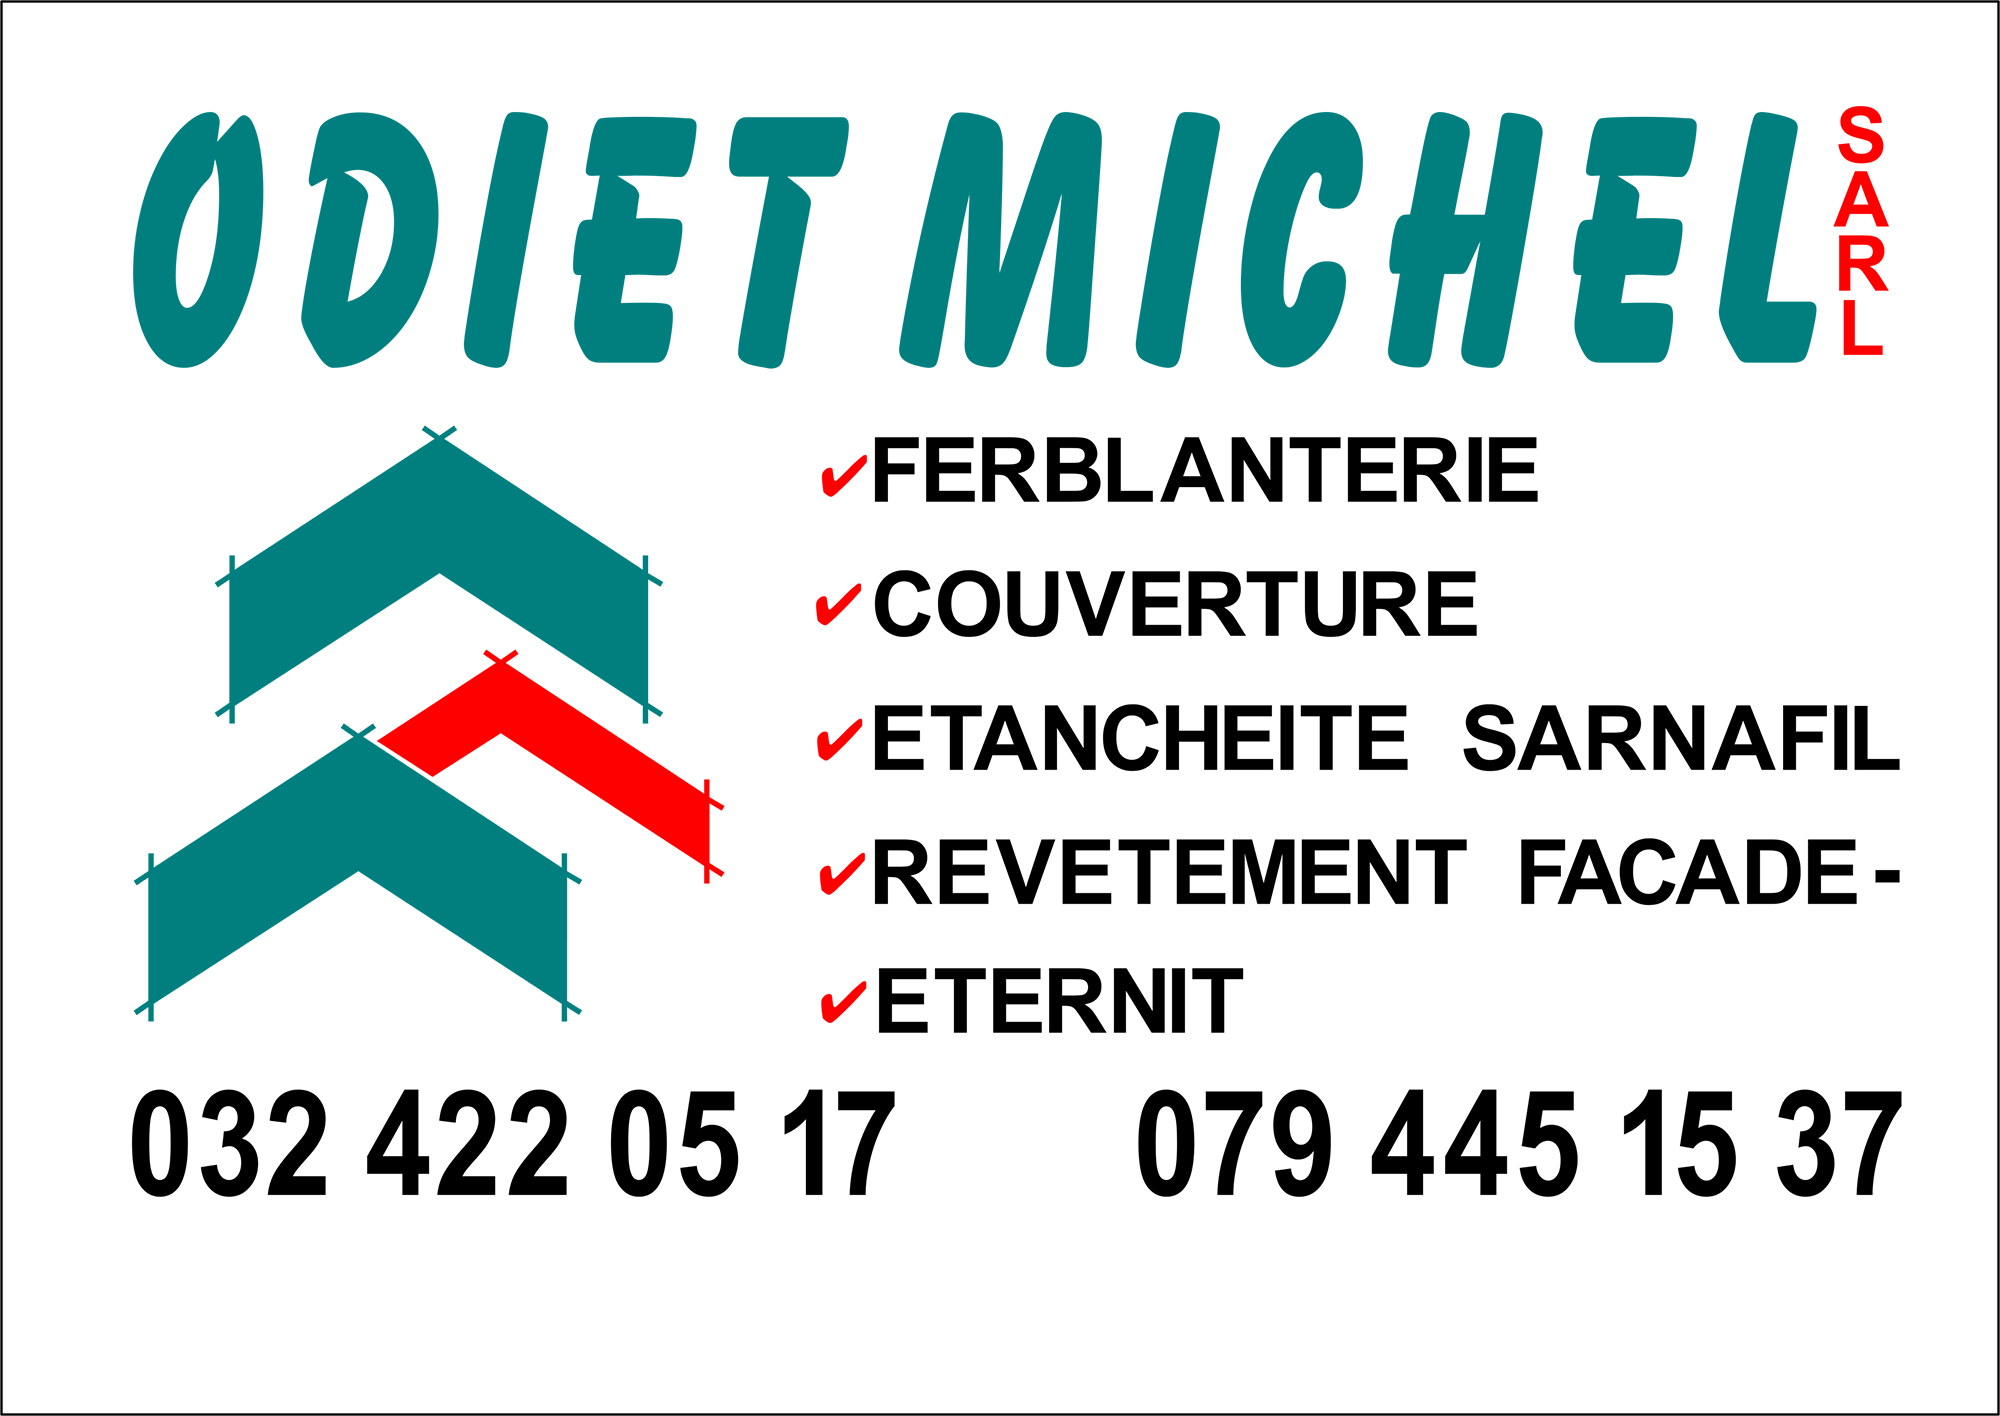 Michel Odiet